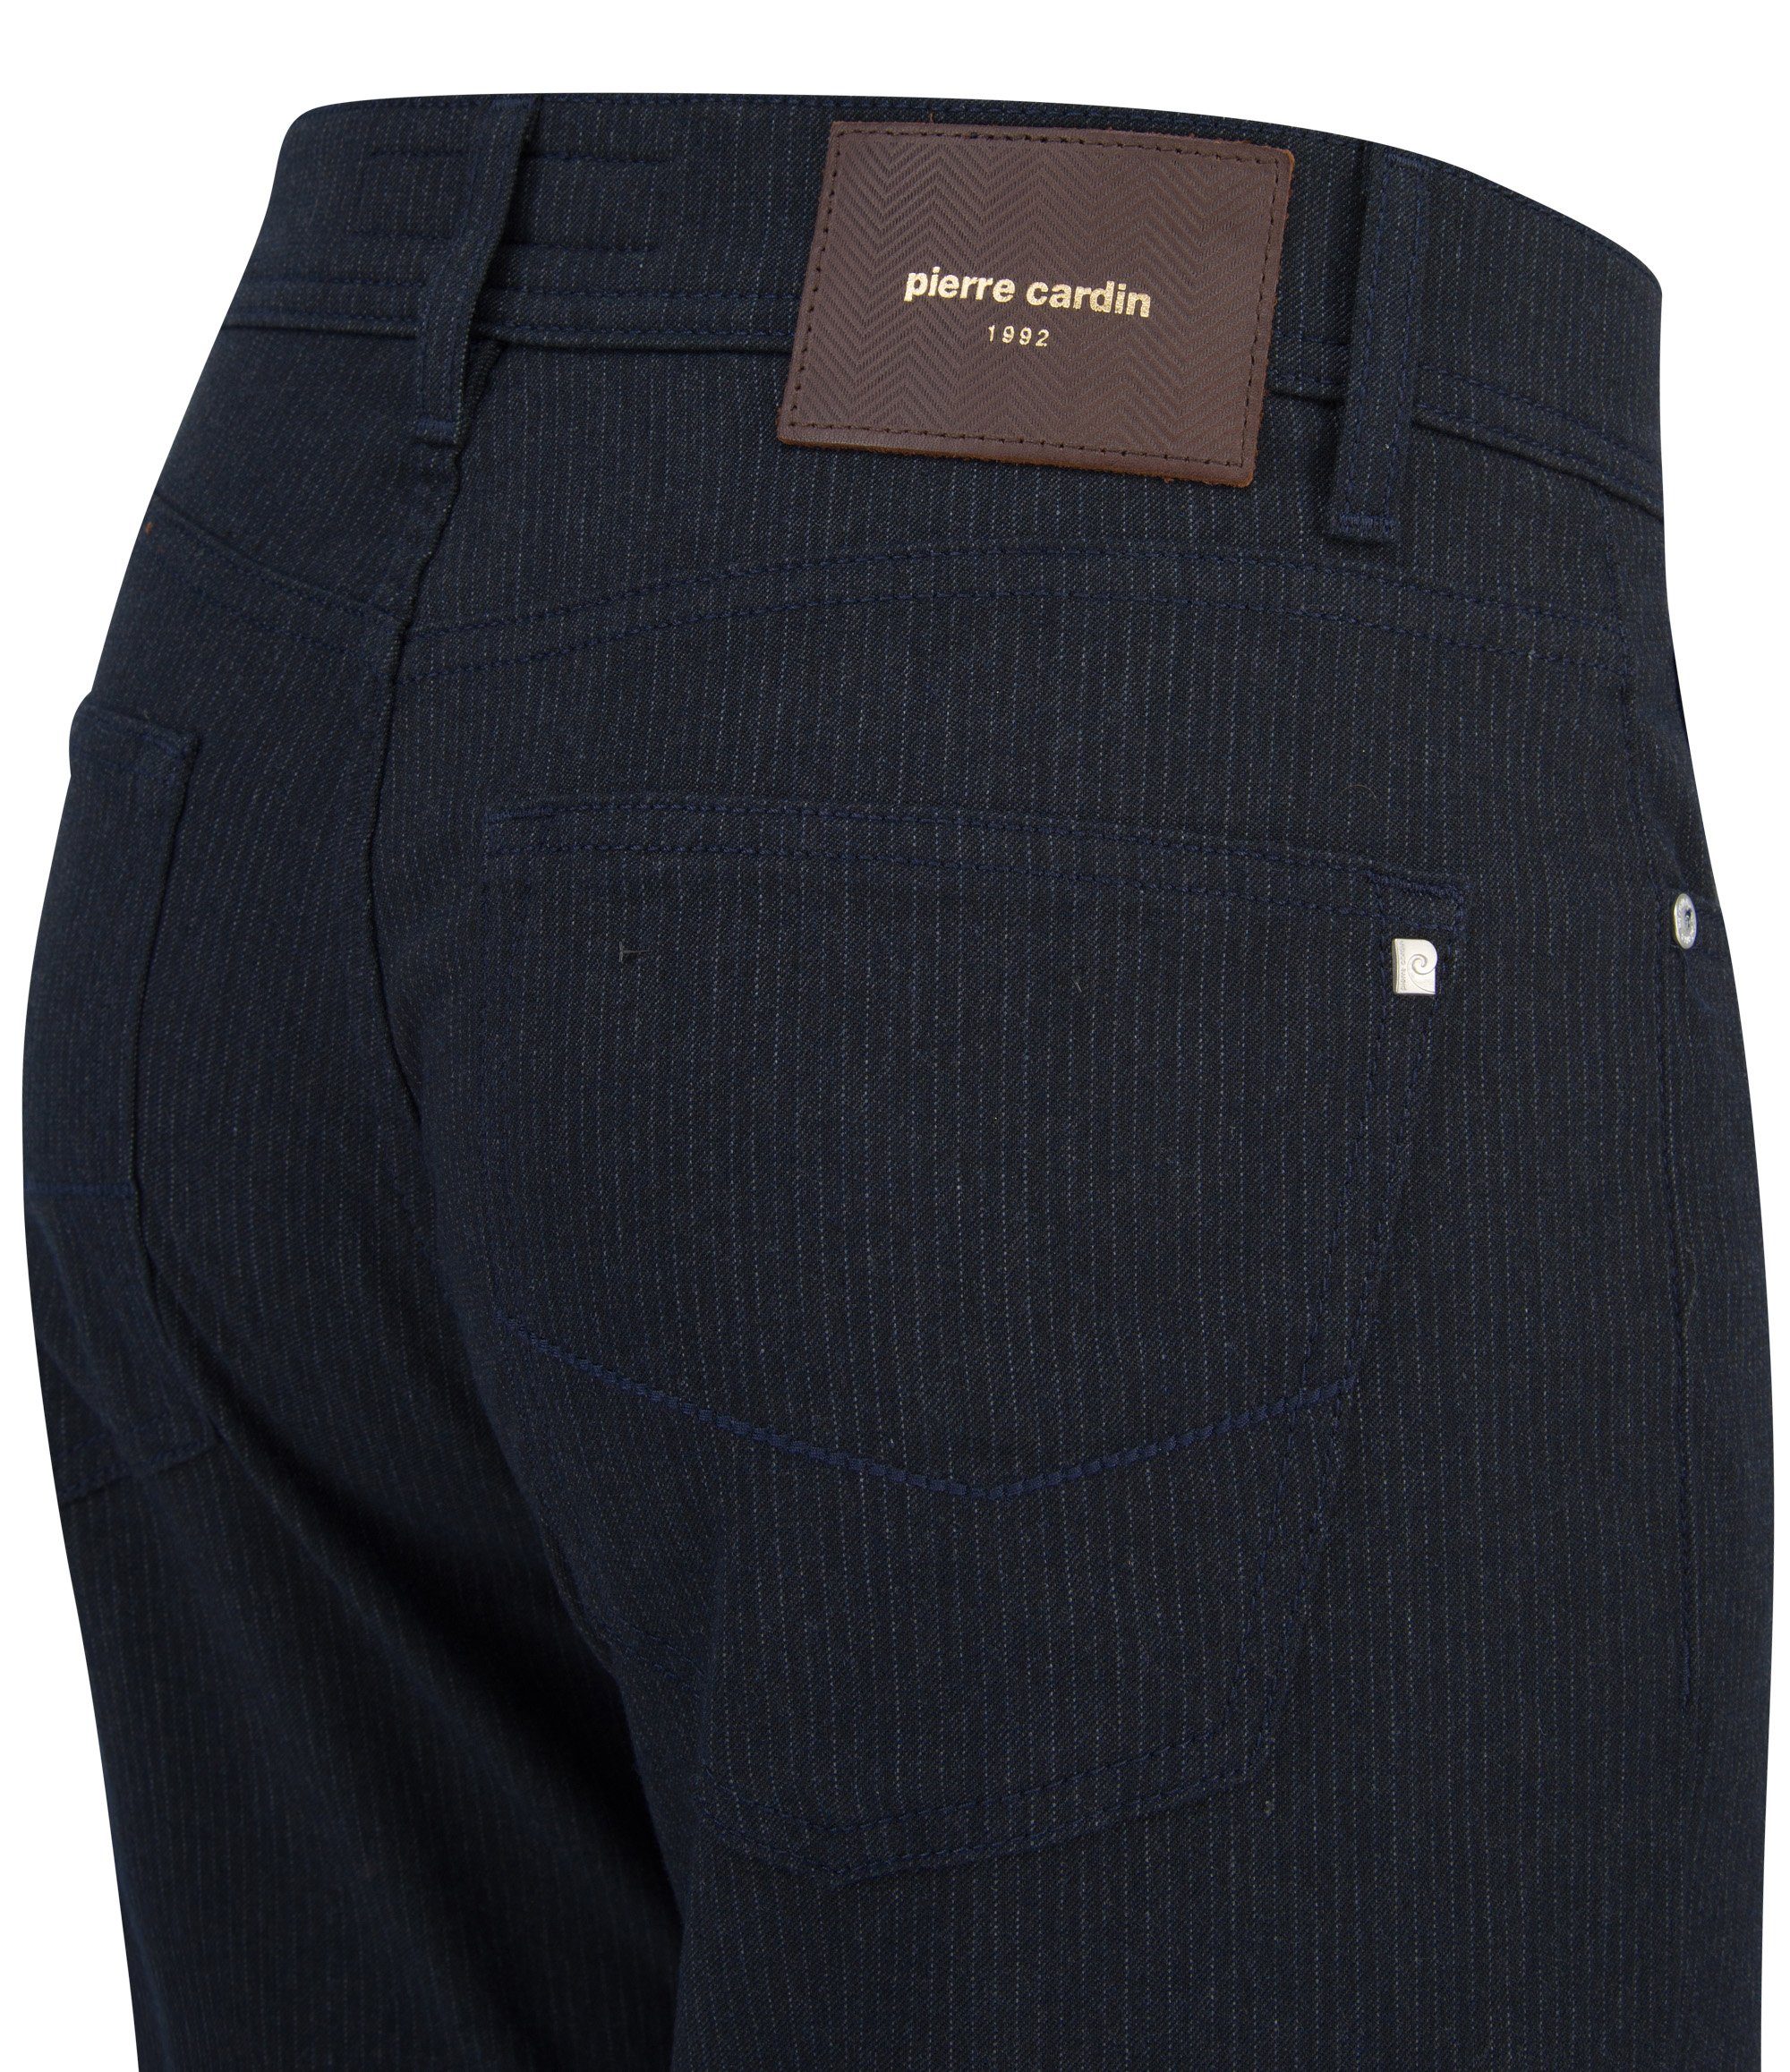 VOYAGE 5-Pocket-Jeans Pierre PIERRE Cardin - LYON CARDIN 4795.68 grey chalk dark 30917 stripes